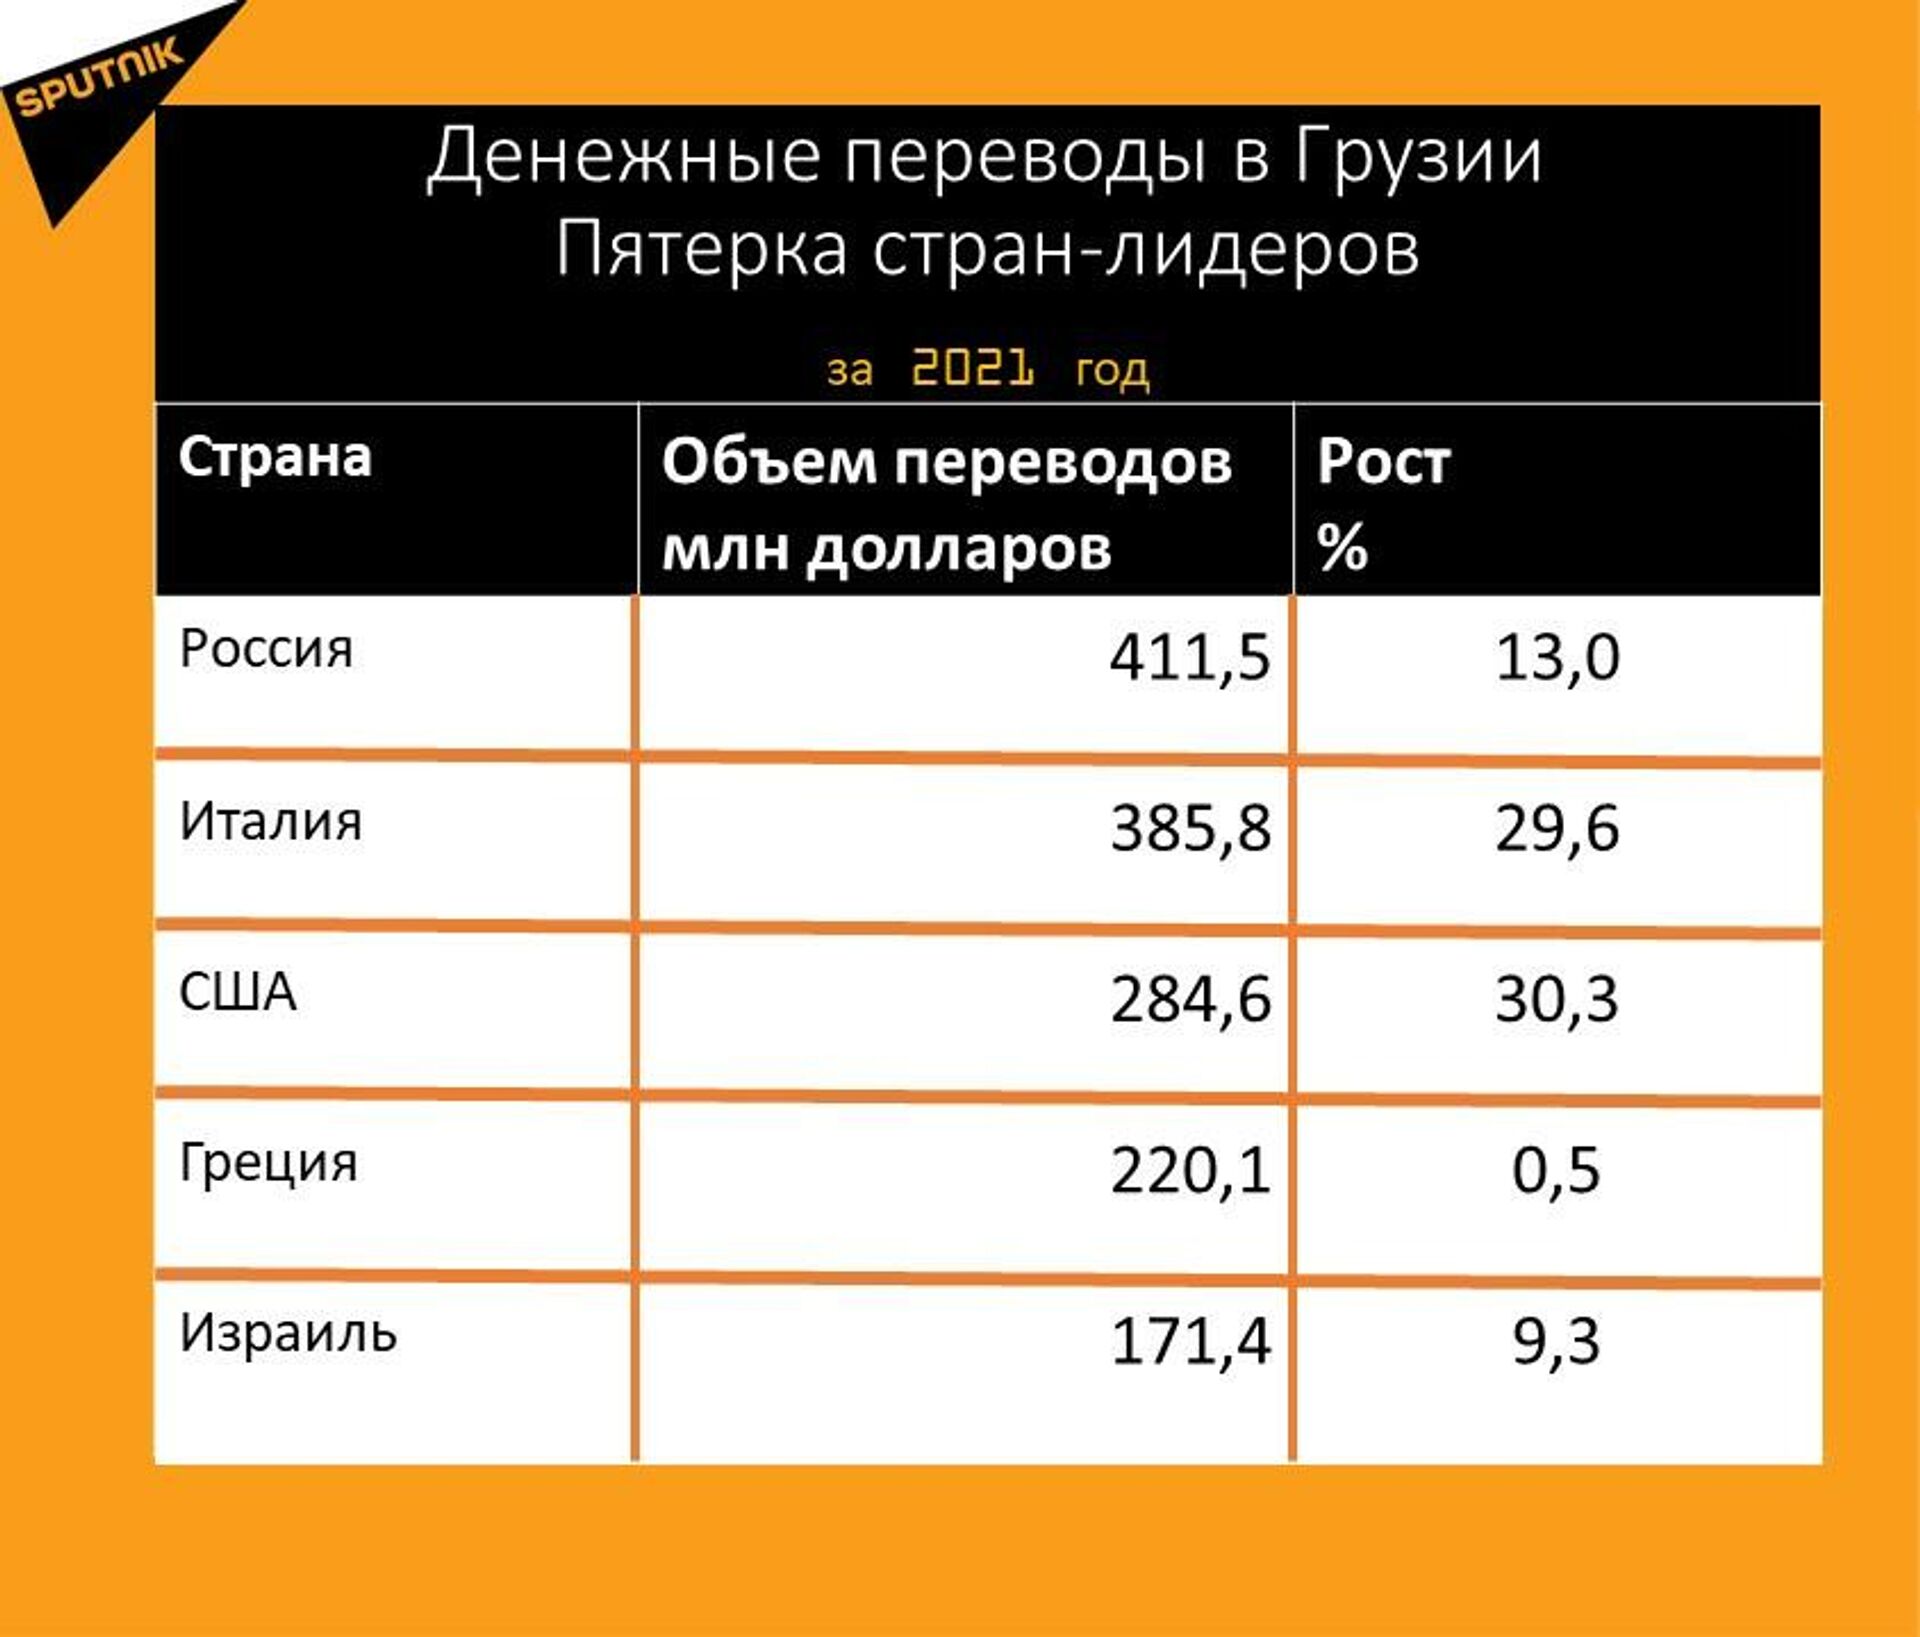 Статистика денежных переводов в Грузию за 2021 год - Sputnik Грузия, 1920, 18.01.2022